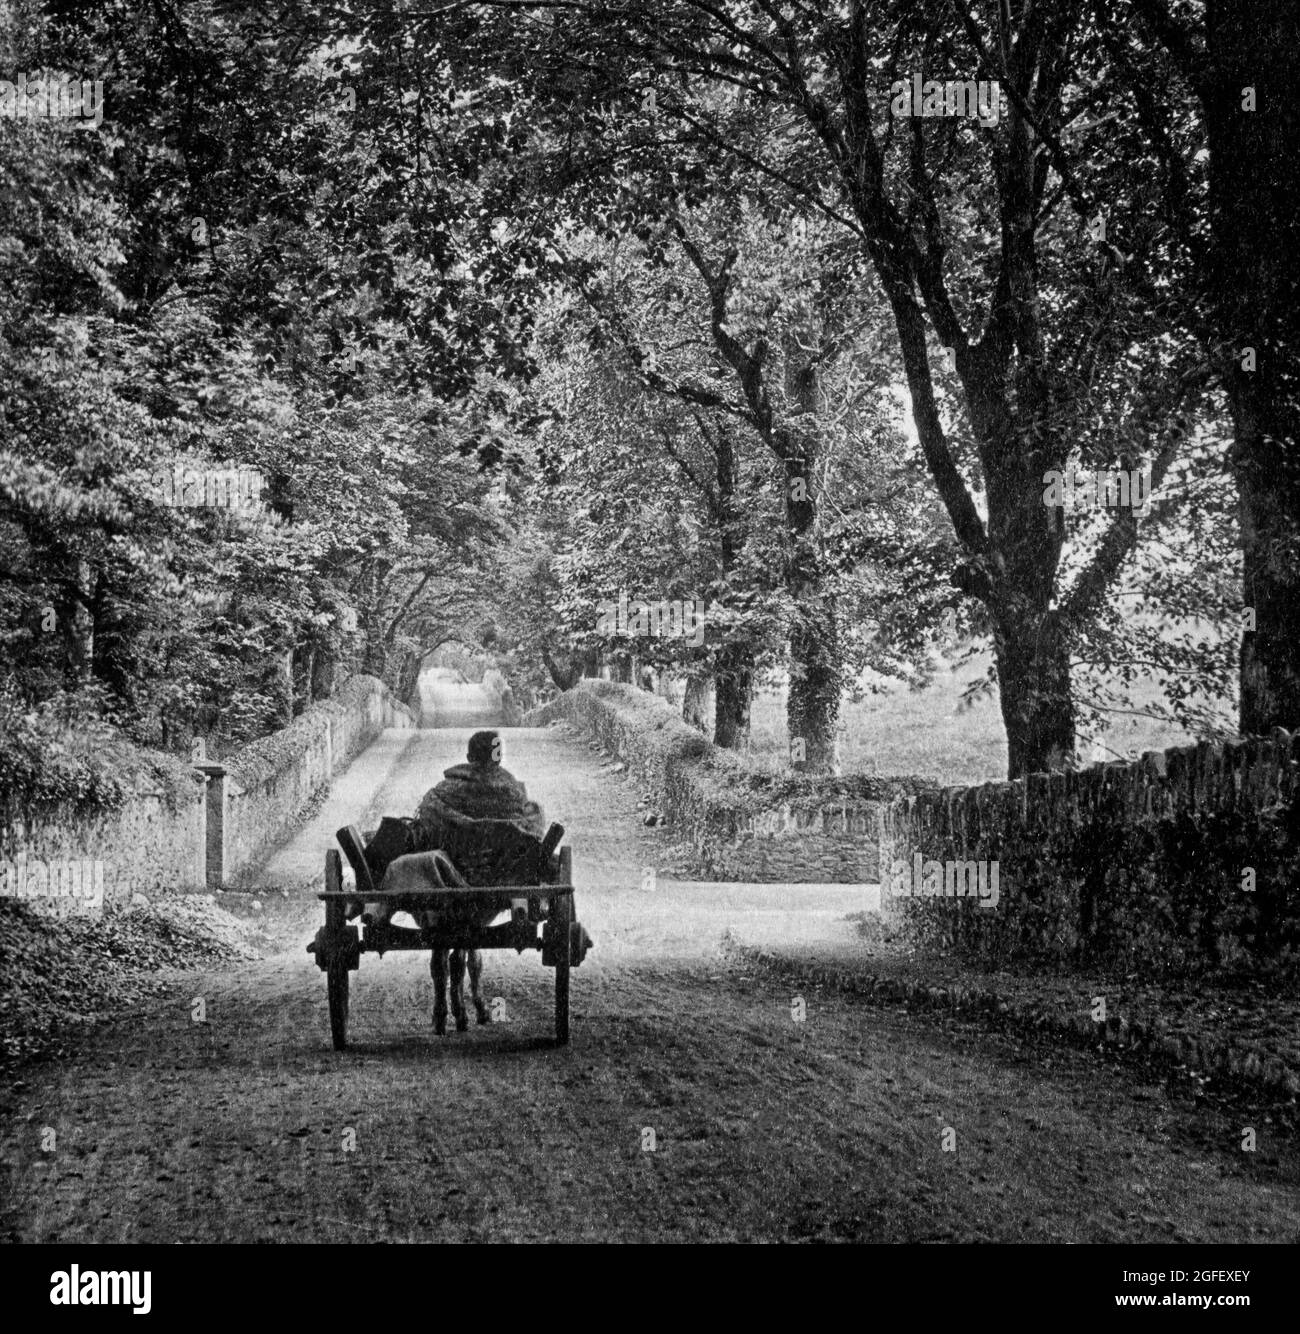 Vue du début du XXe siècle d'une voiturette à ânes et d'un chauffeur se rendant sur une route de campagne près de Muckross dans le parc national de Killarney, dans le comté de Kerry, en Irlande Banque D'Images